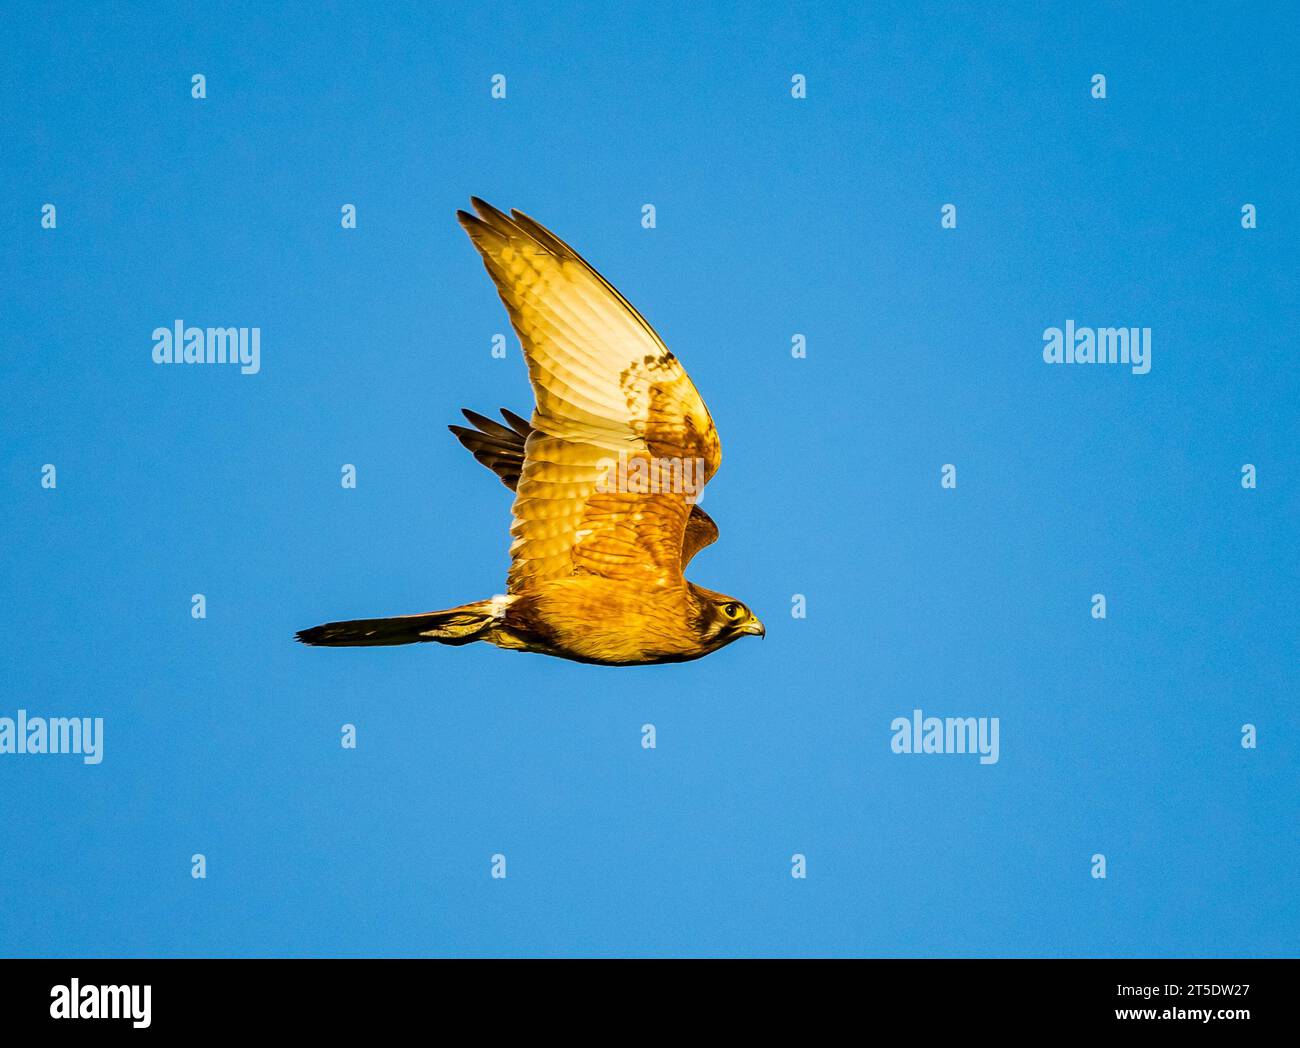 Ein brauner Falke (Falco berigora), der über den blauen Himmel fliegt. Australien. Stockfoto